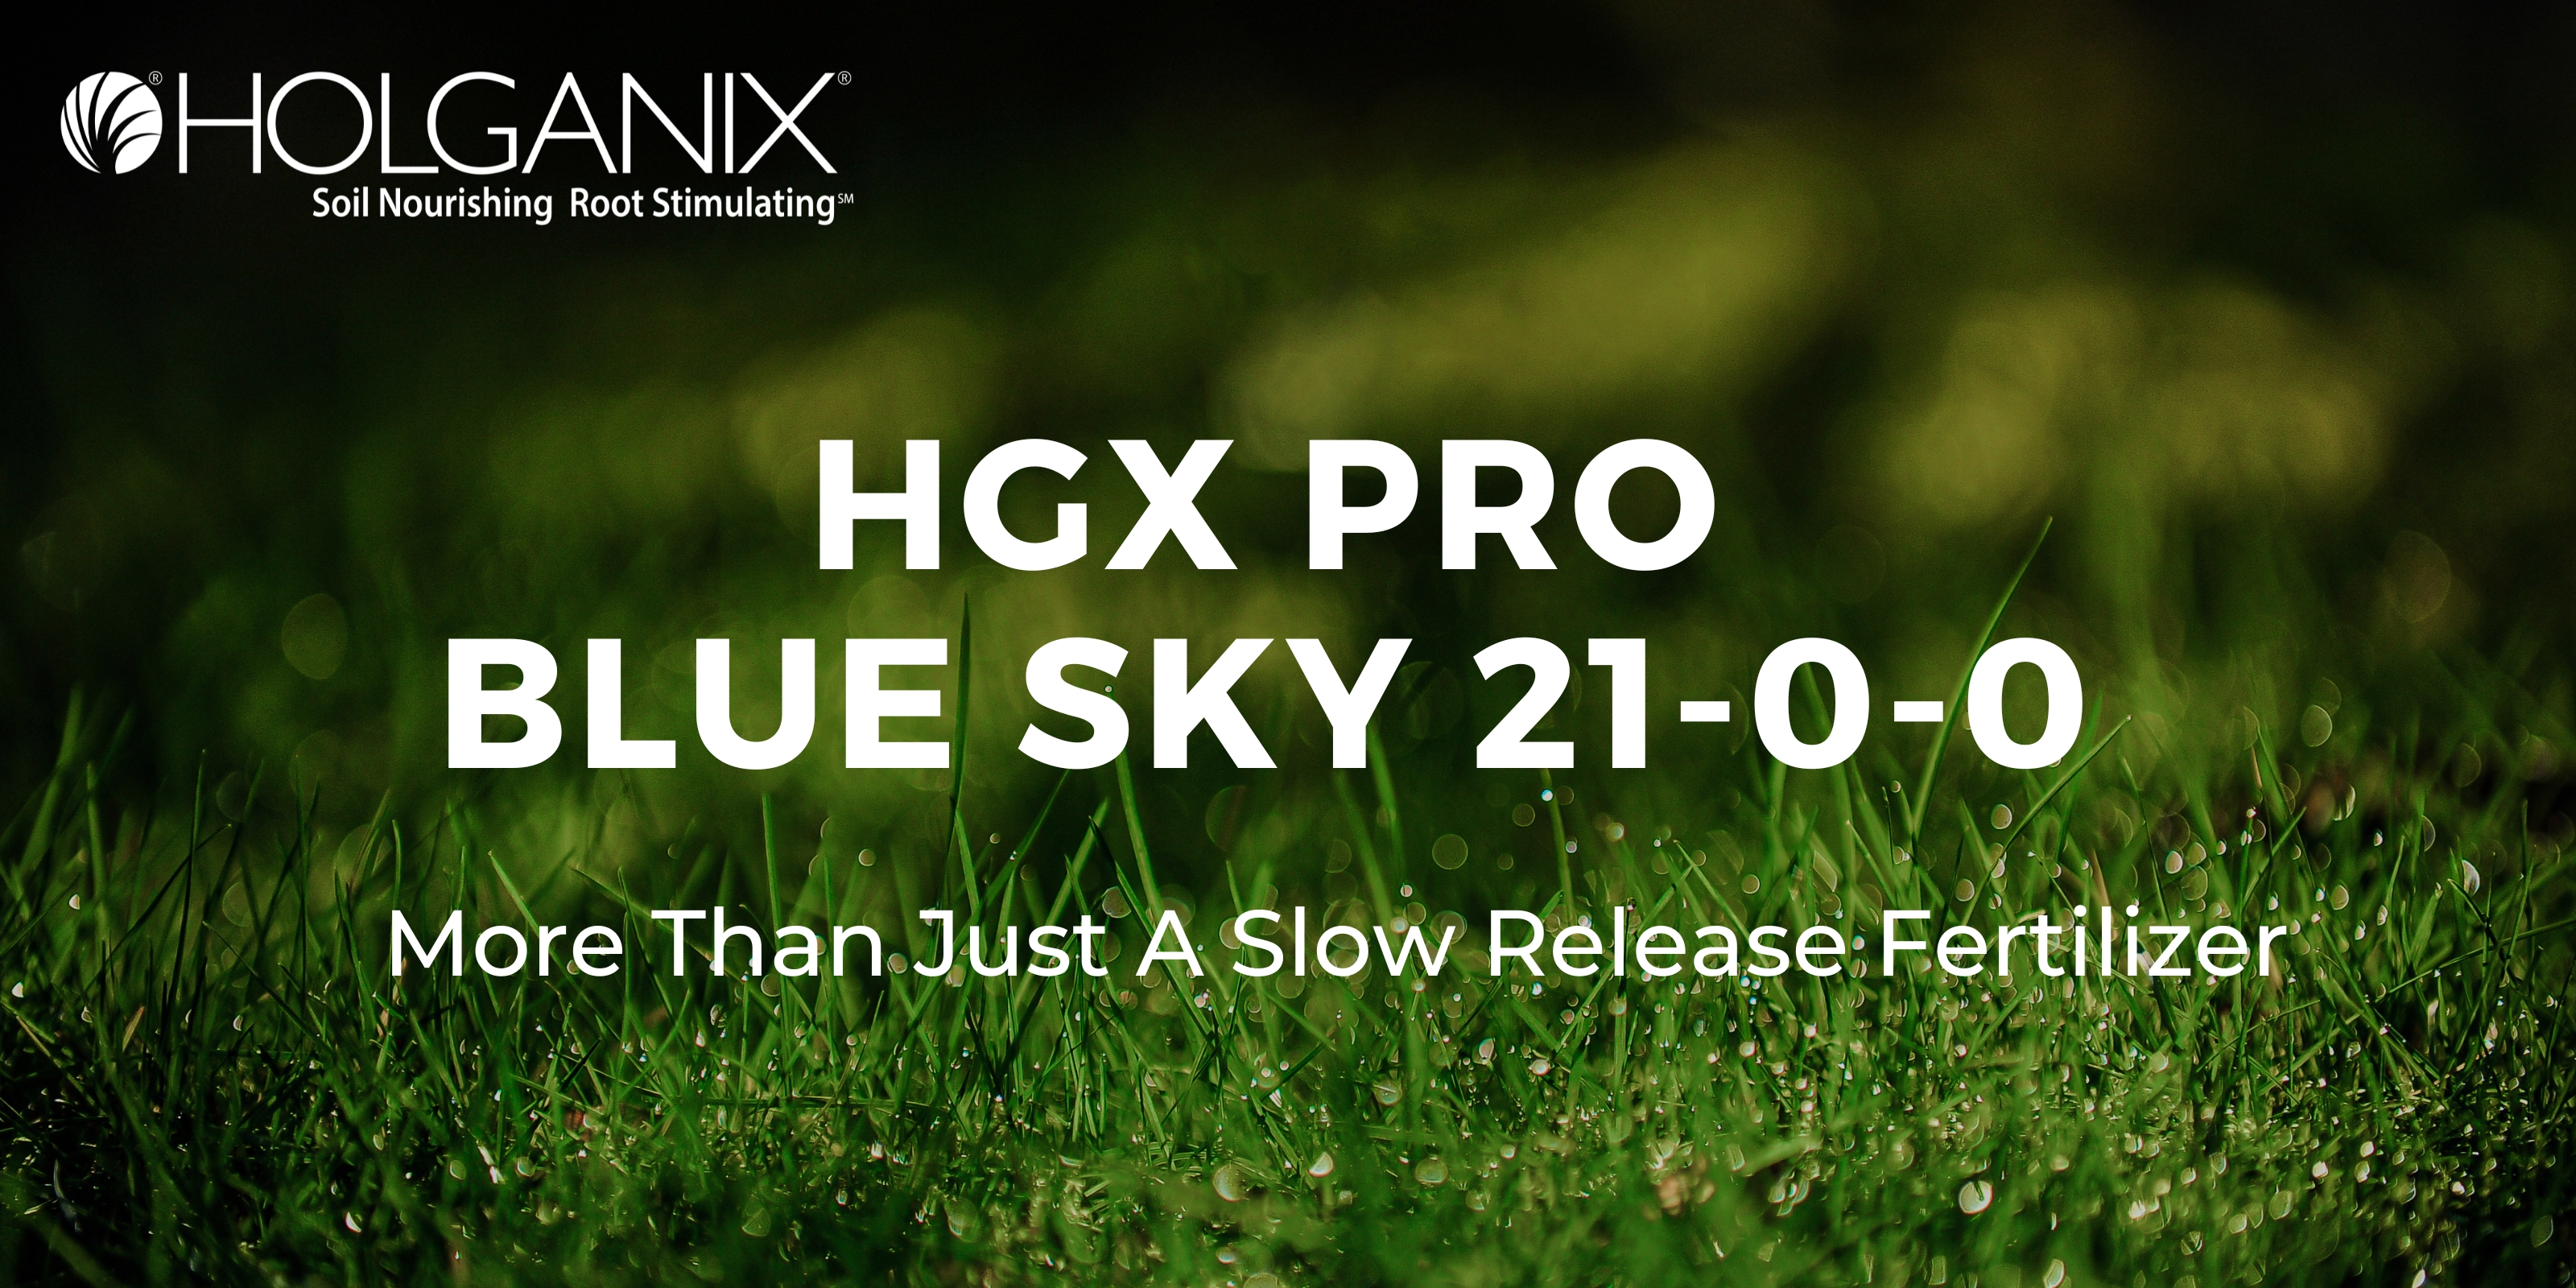 HGX Pro Blue Sky 21-0-0 